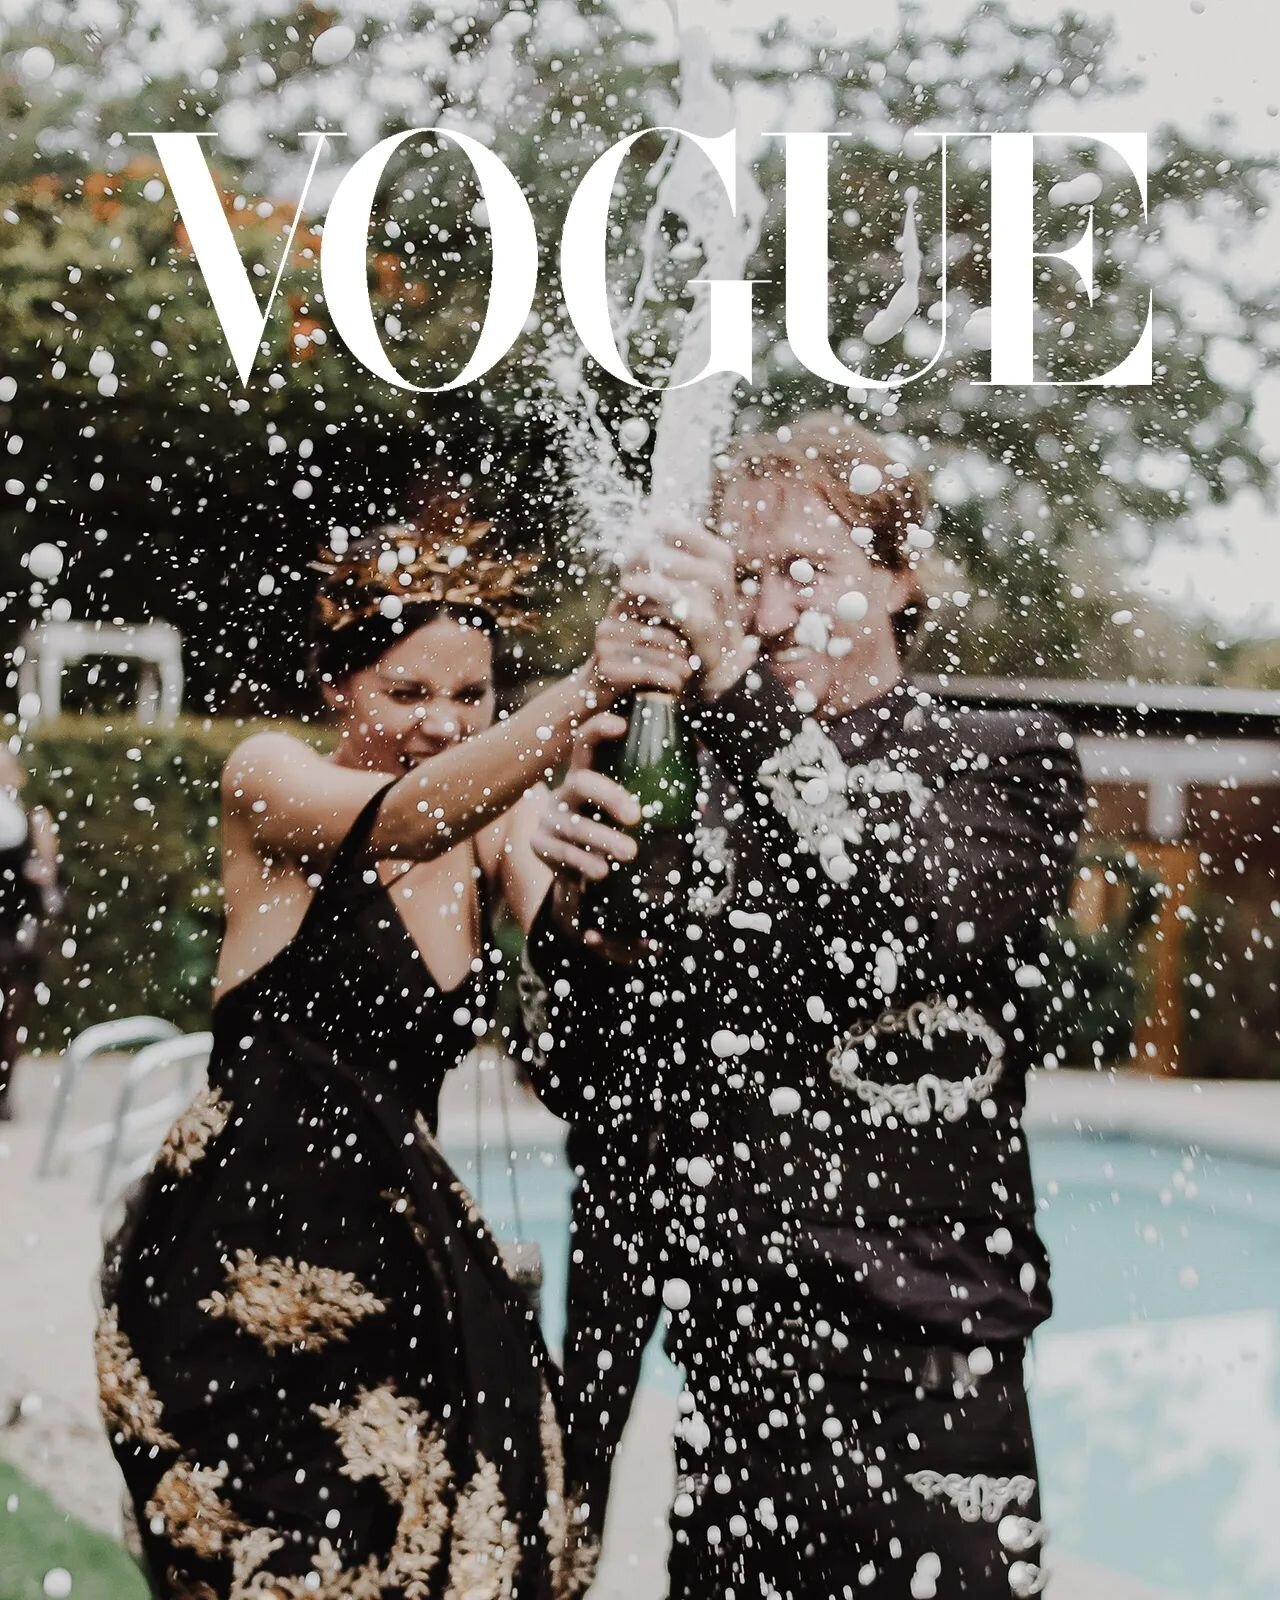 &ldquo;Vogue Falls in love&rdquo;&nbsp;

Pasa el tiempo y este par sigue conquistando el mundo.

Con el coraz&oacute;n lleno y agradecido les comparto la tercera y &uacute;ltima aparici&oacute;n (De este a&ntilde;o🤞✨✌️) de nuestras fotos en British 